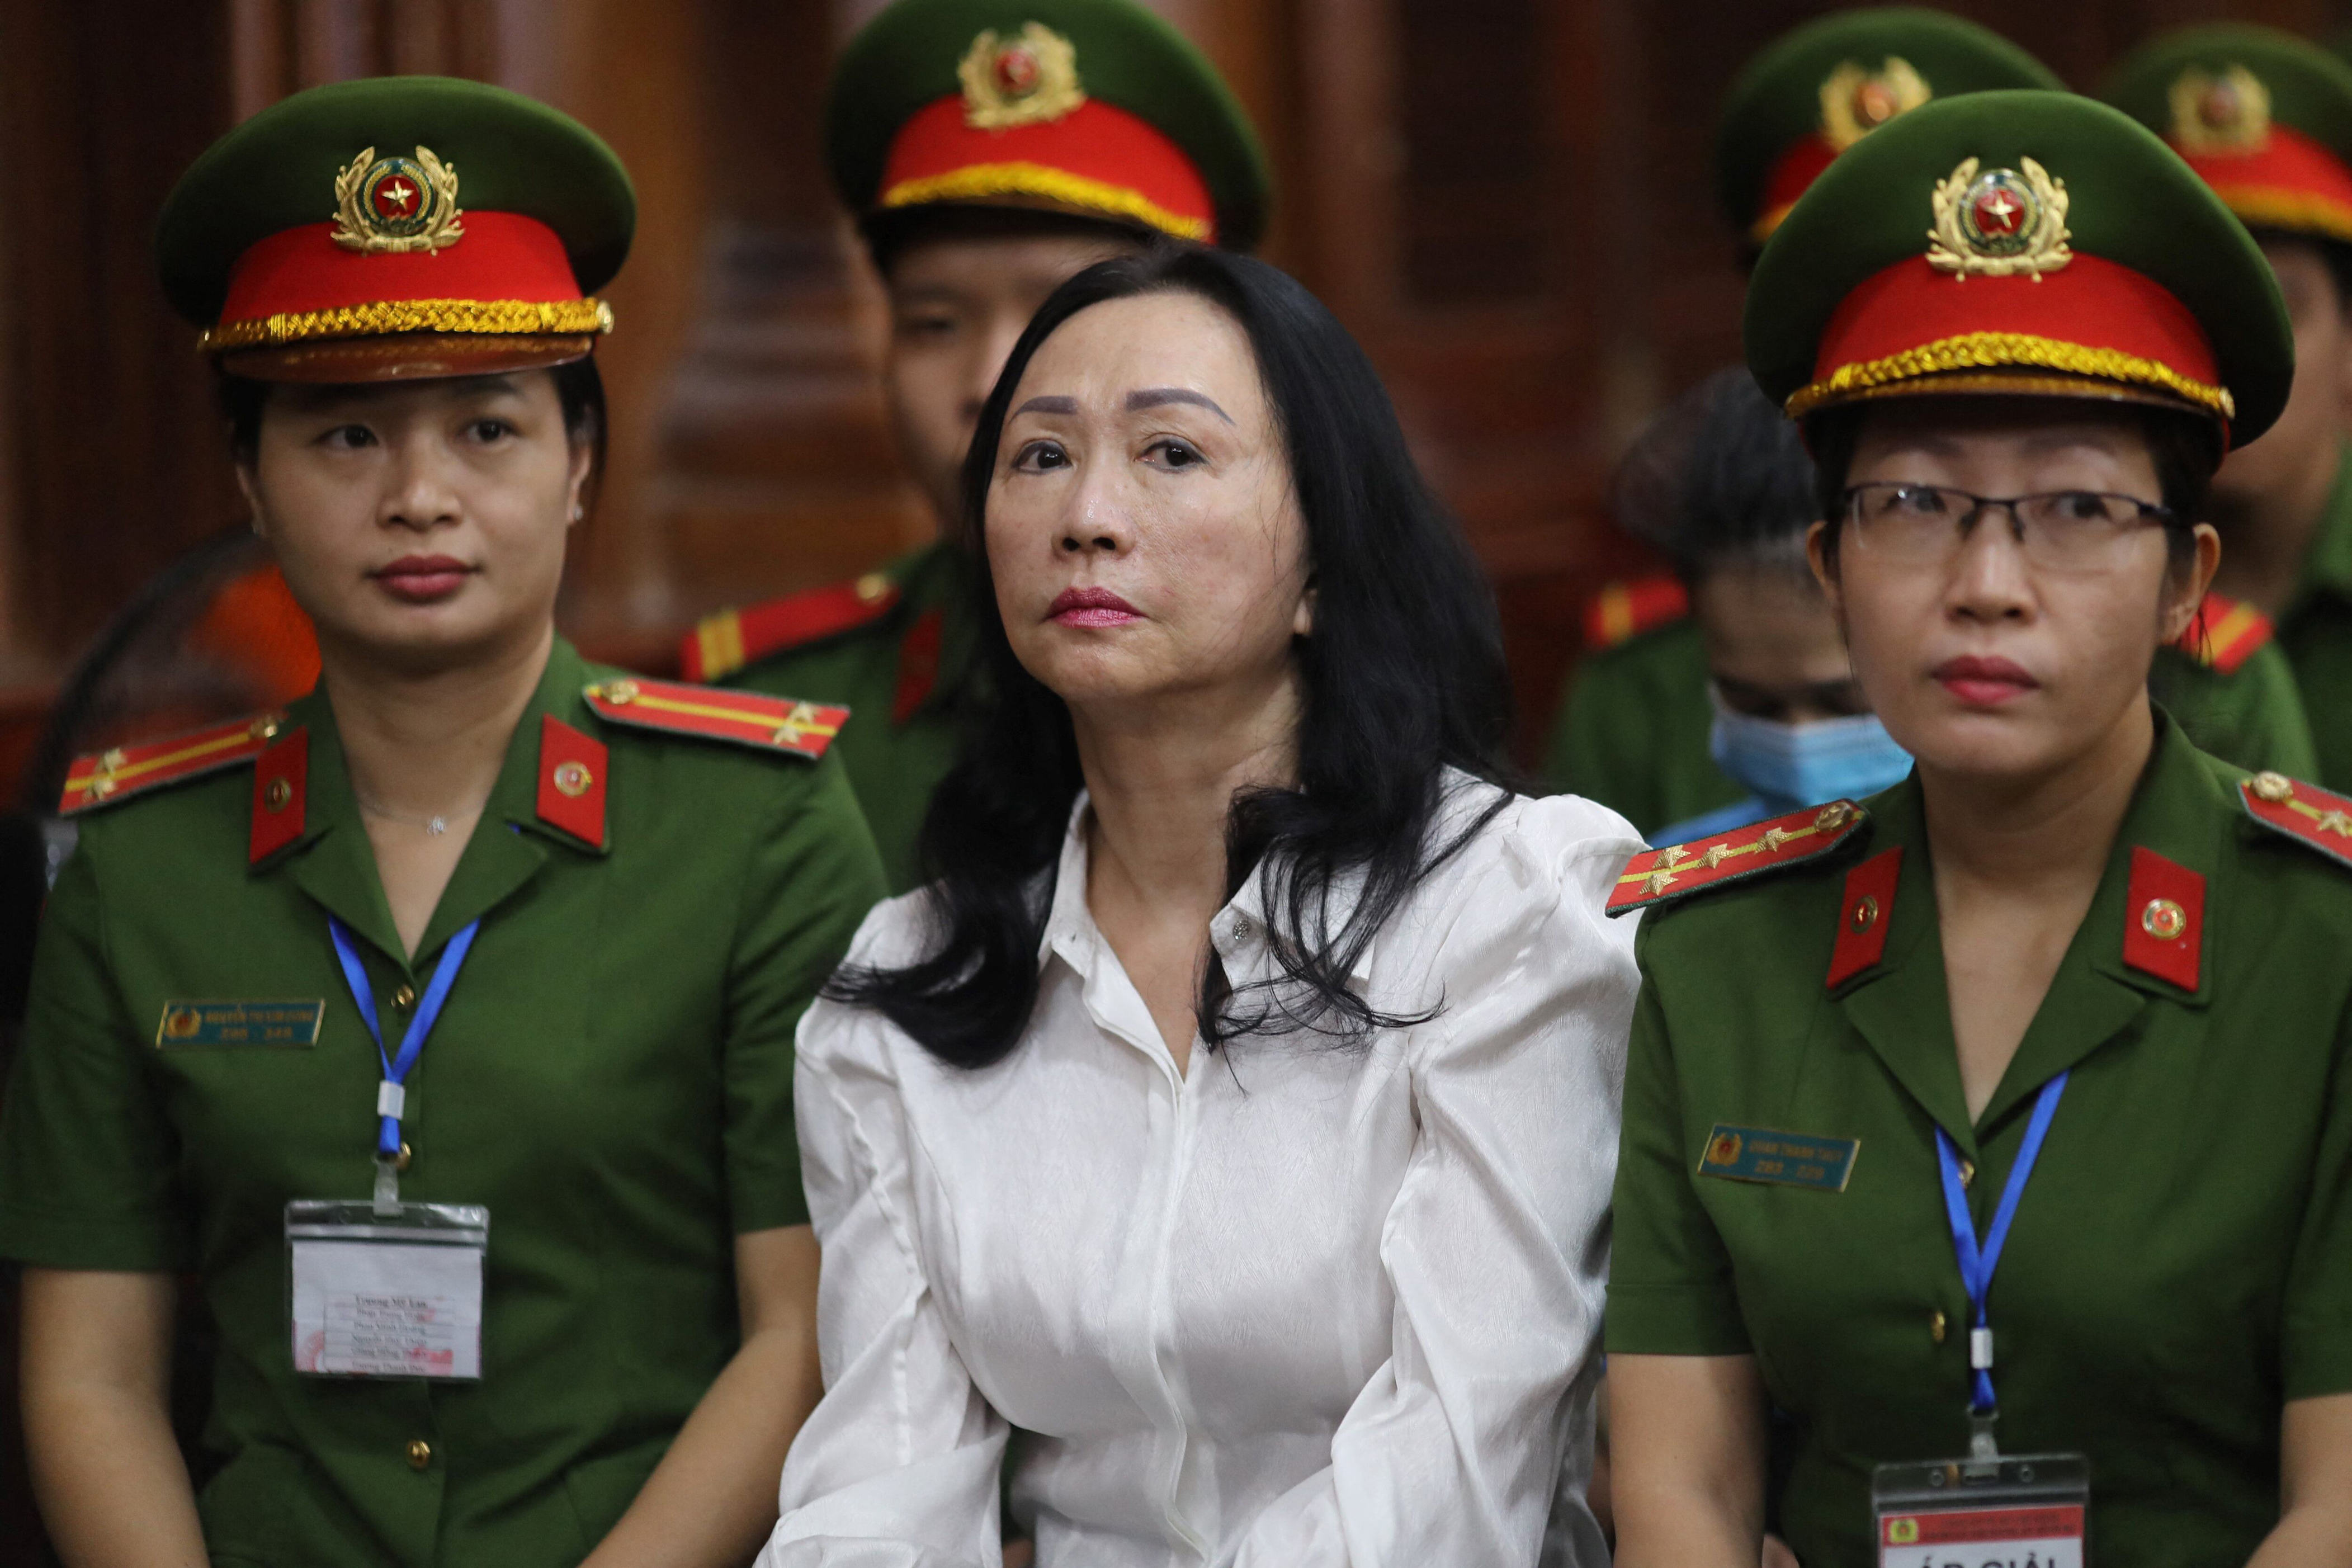 condenan a muerte a una empresaria en vietnam por el fraude más grande la historia de ese país: “estoy tan enfadada por haber sido tan estúpida”